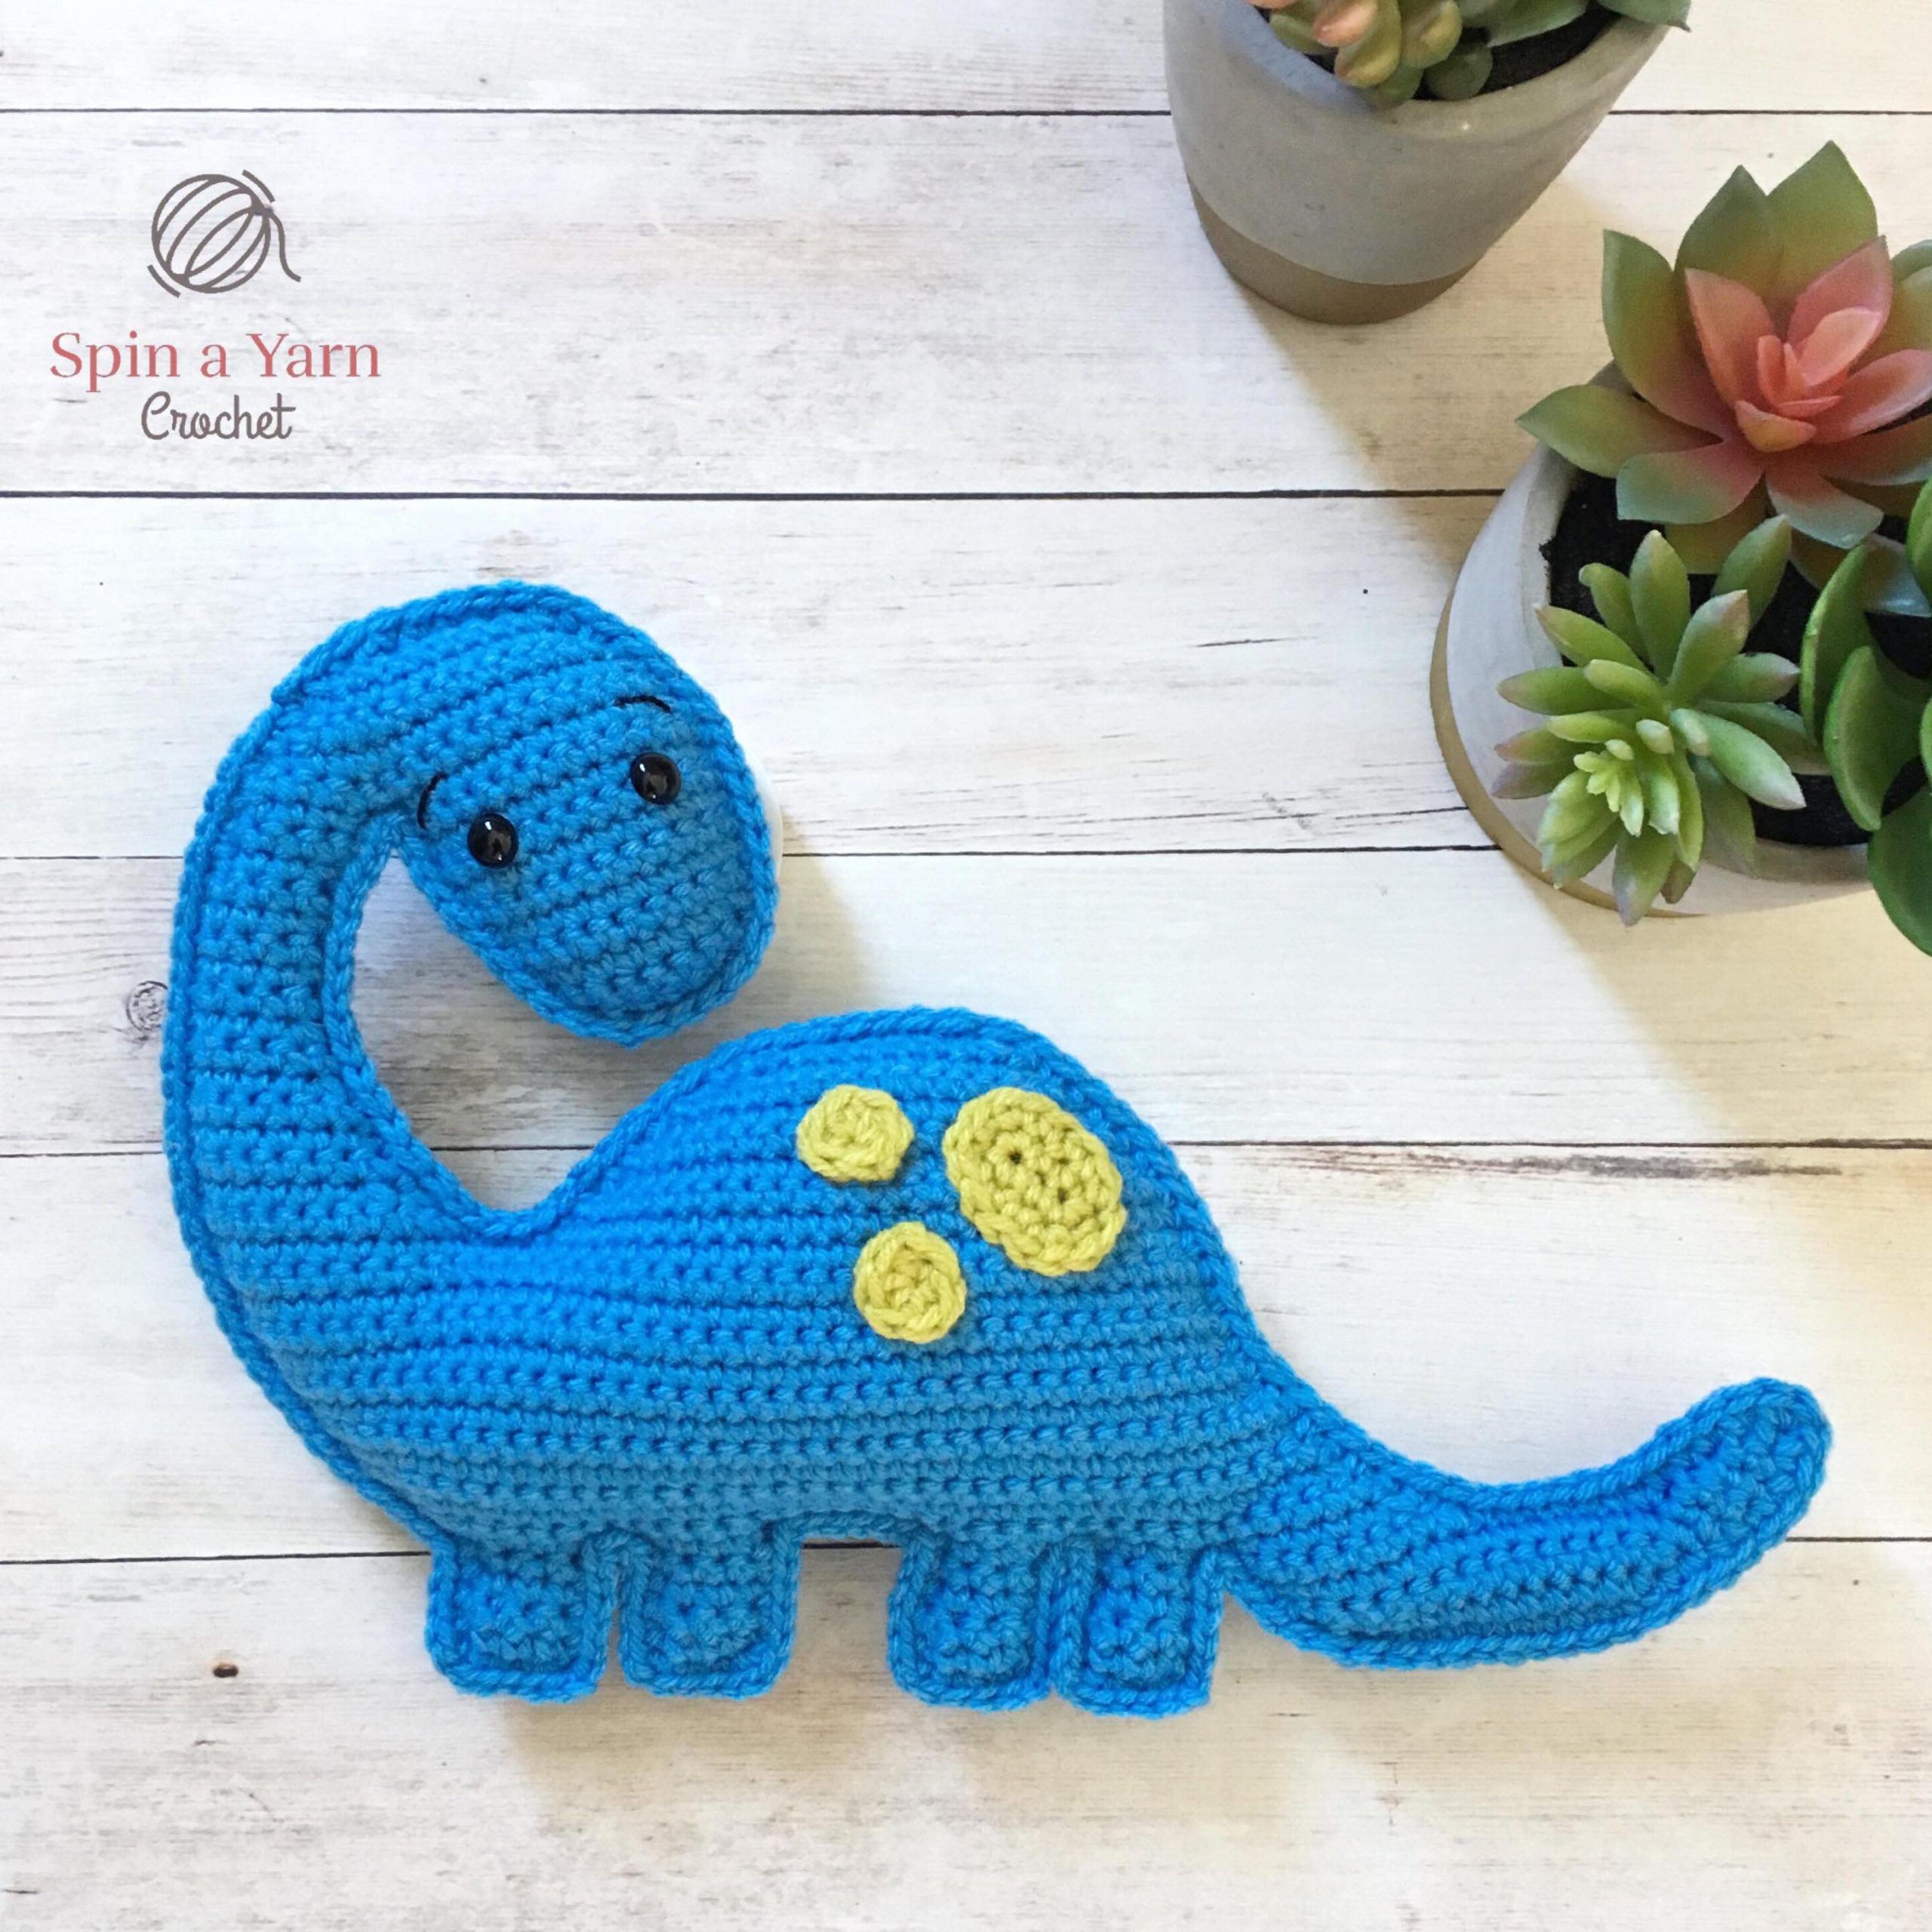 PP OPOUNT Beginner Crochet Kit - Cute Dinosaur, Complete Crochet